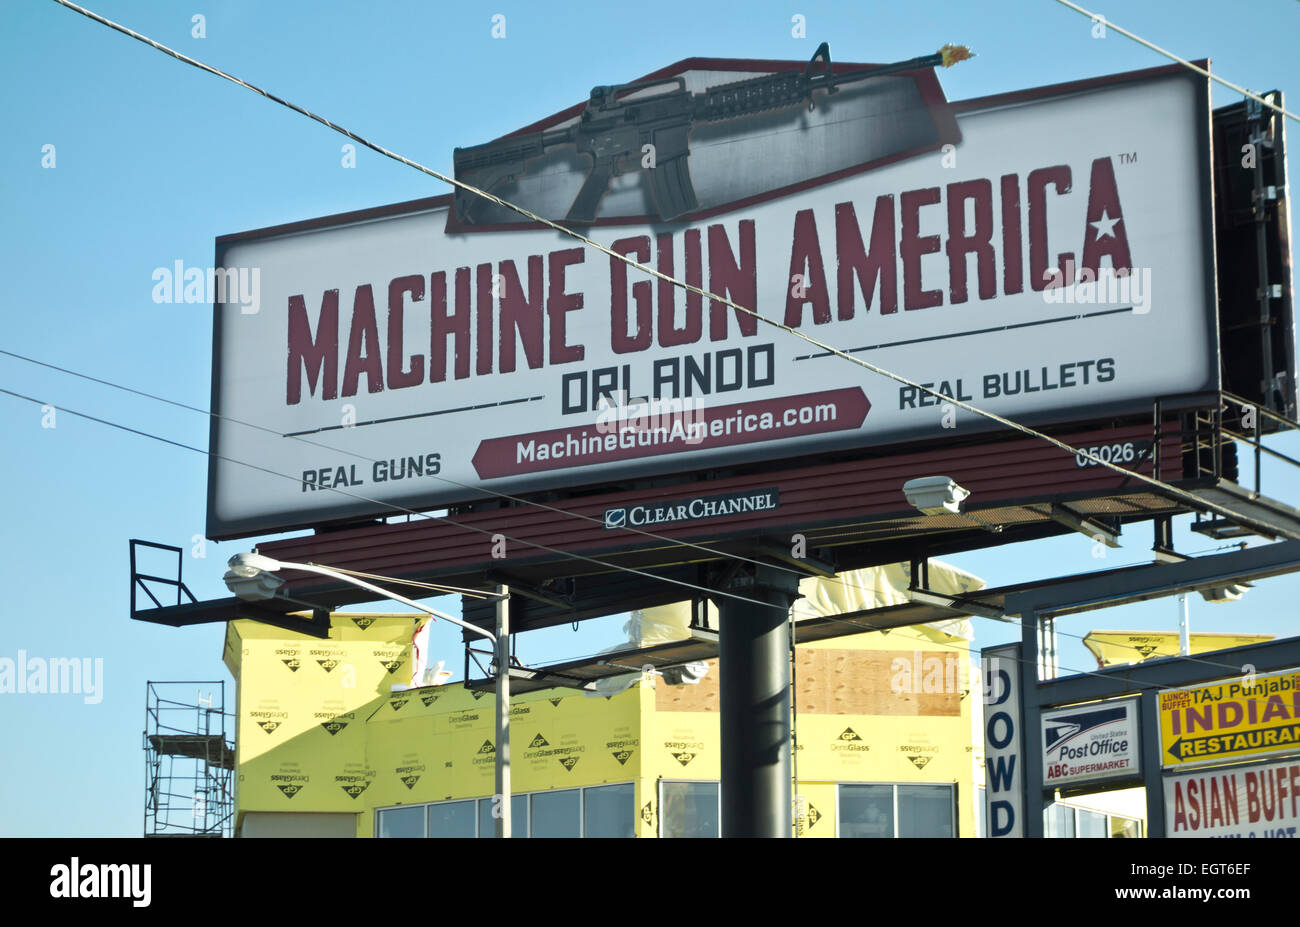 Großes Plakat Werbung Maschinengewehr Amerika, gesehen am International Drive in Orlando, Florida, Vereinigte Staaten von Amerika Stockfoto